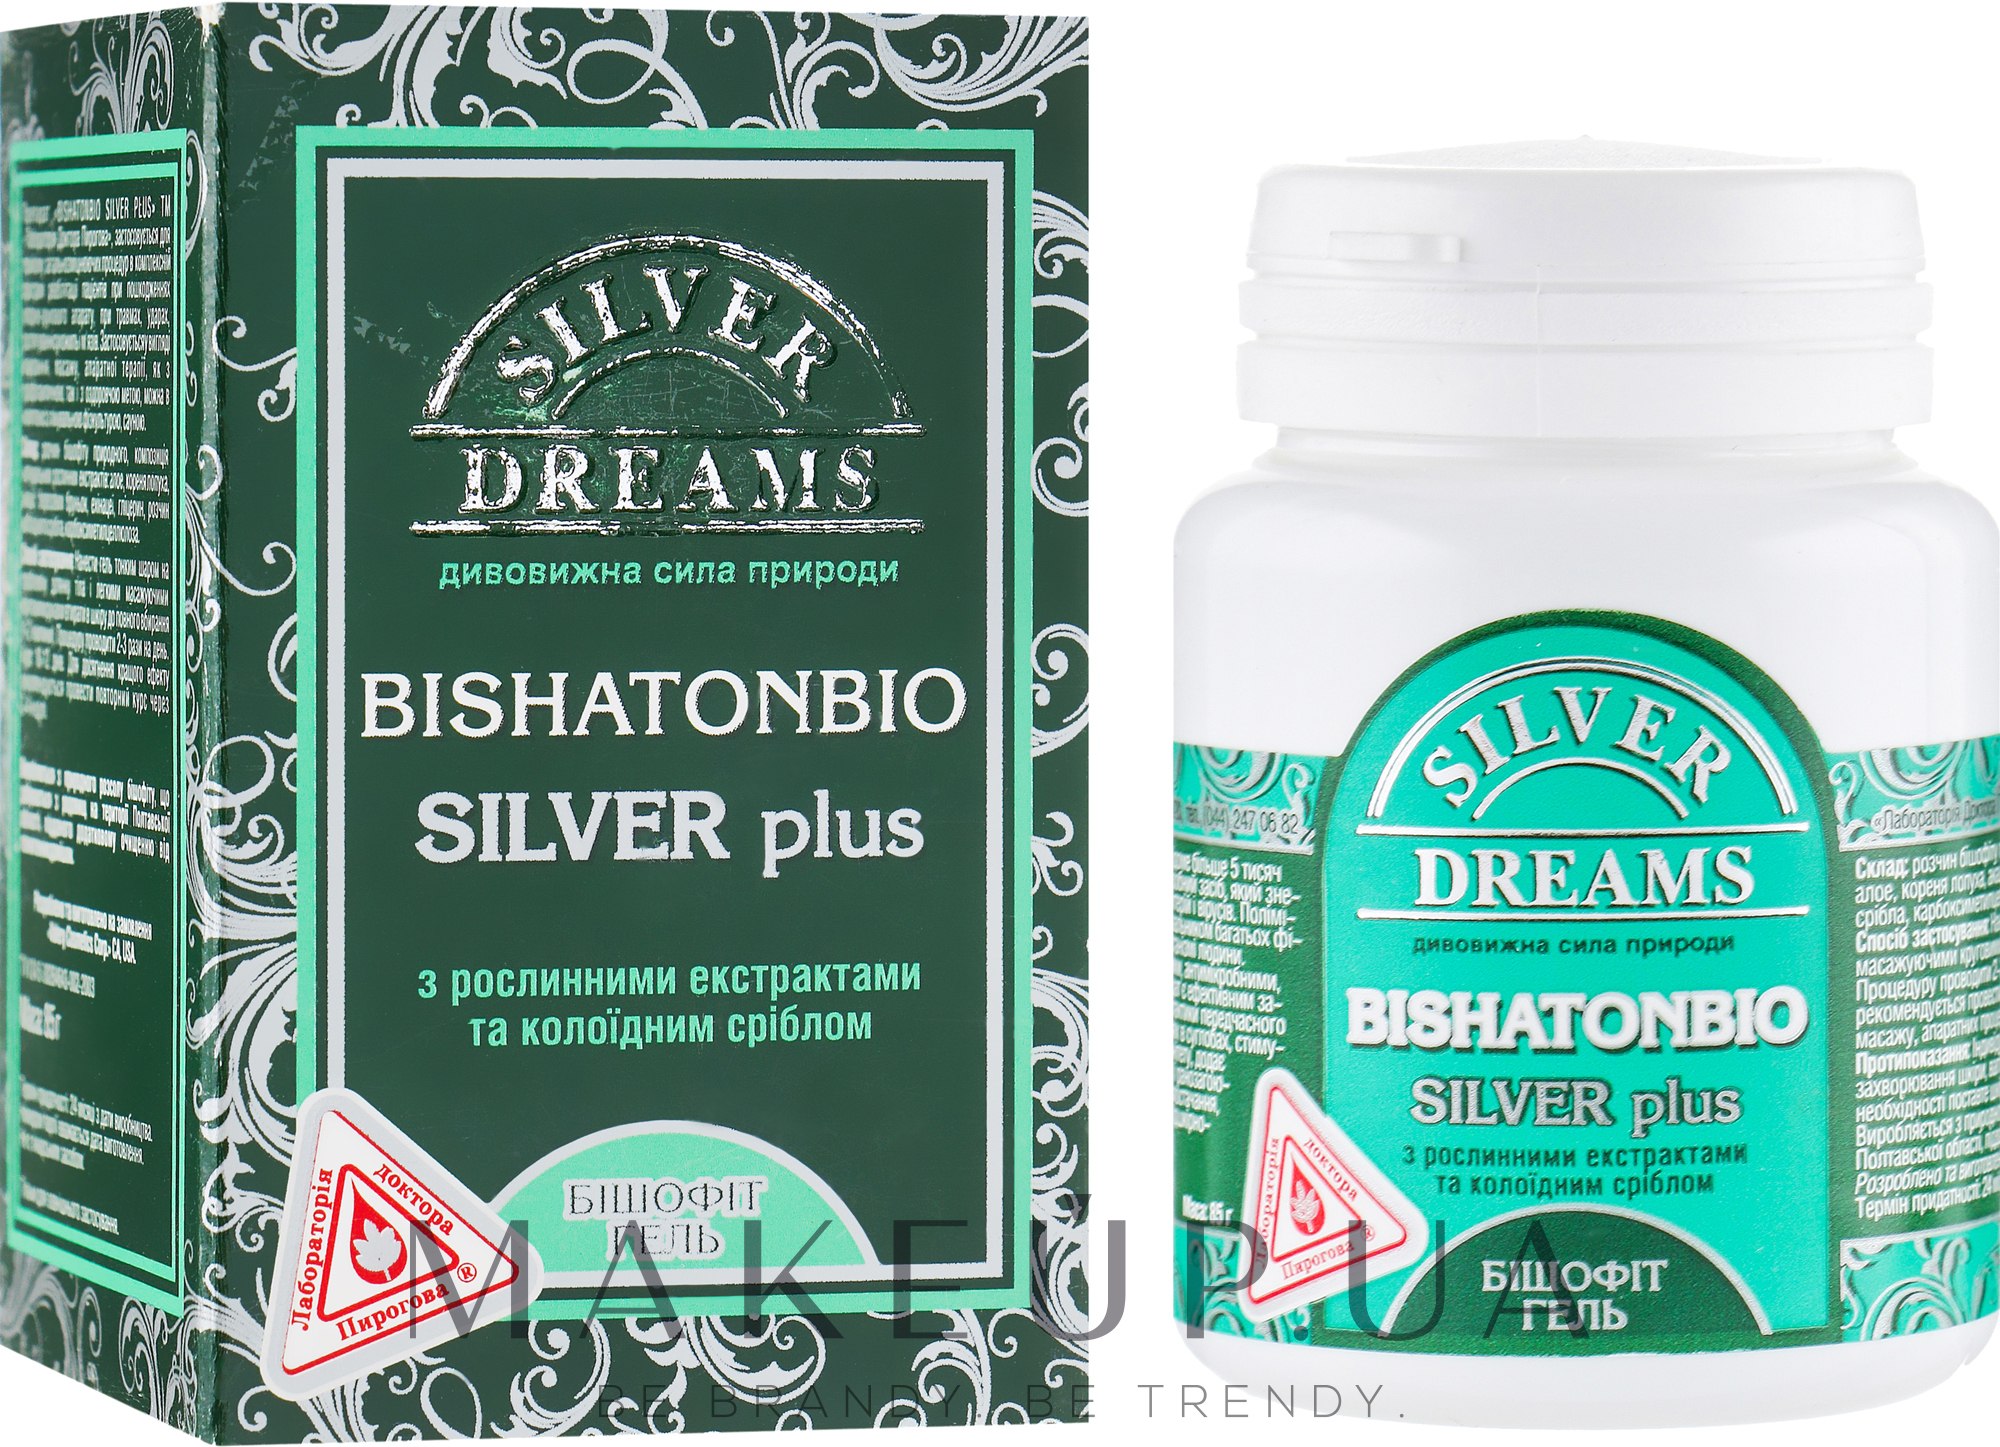 Бишофит гель с коллоидным серебром - Лаборатория доктора Пирогова Bishatonbio Silver plus — фото 85g